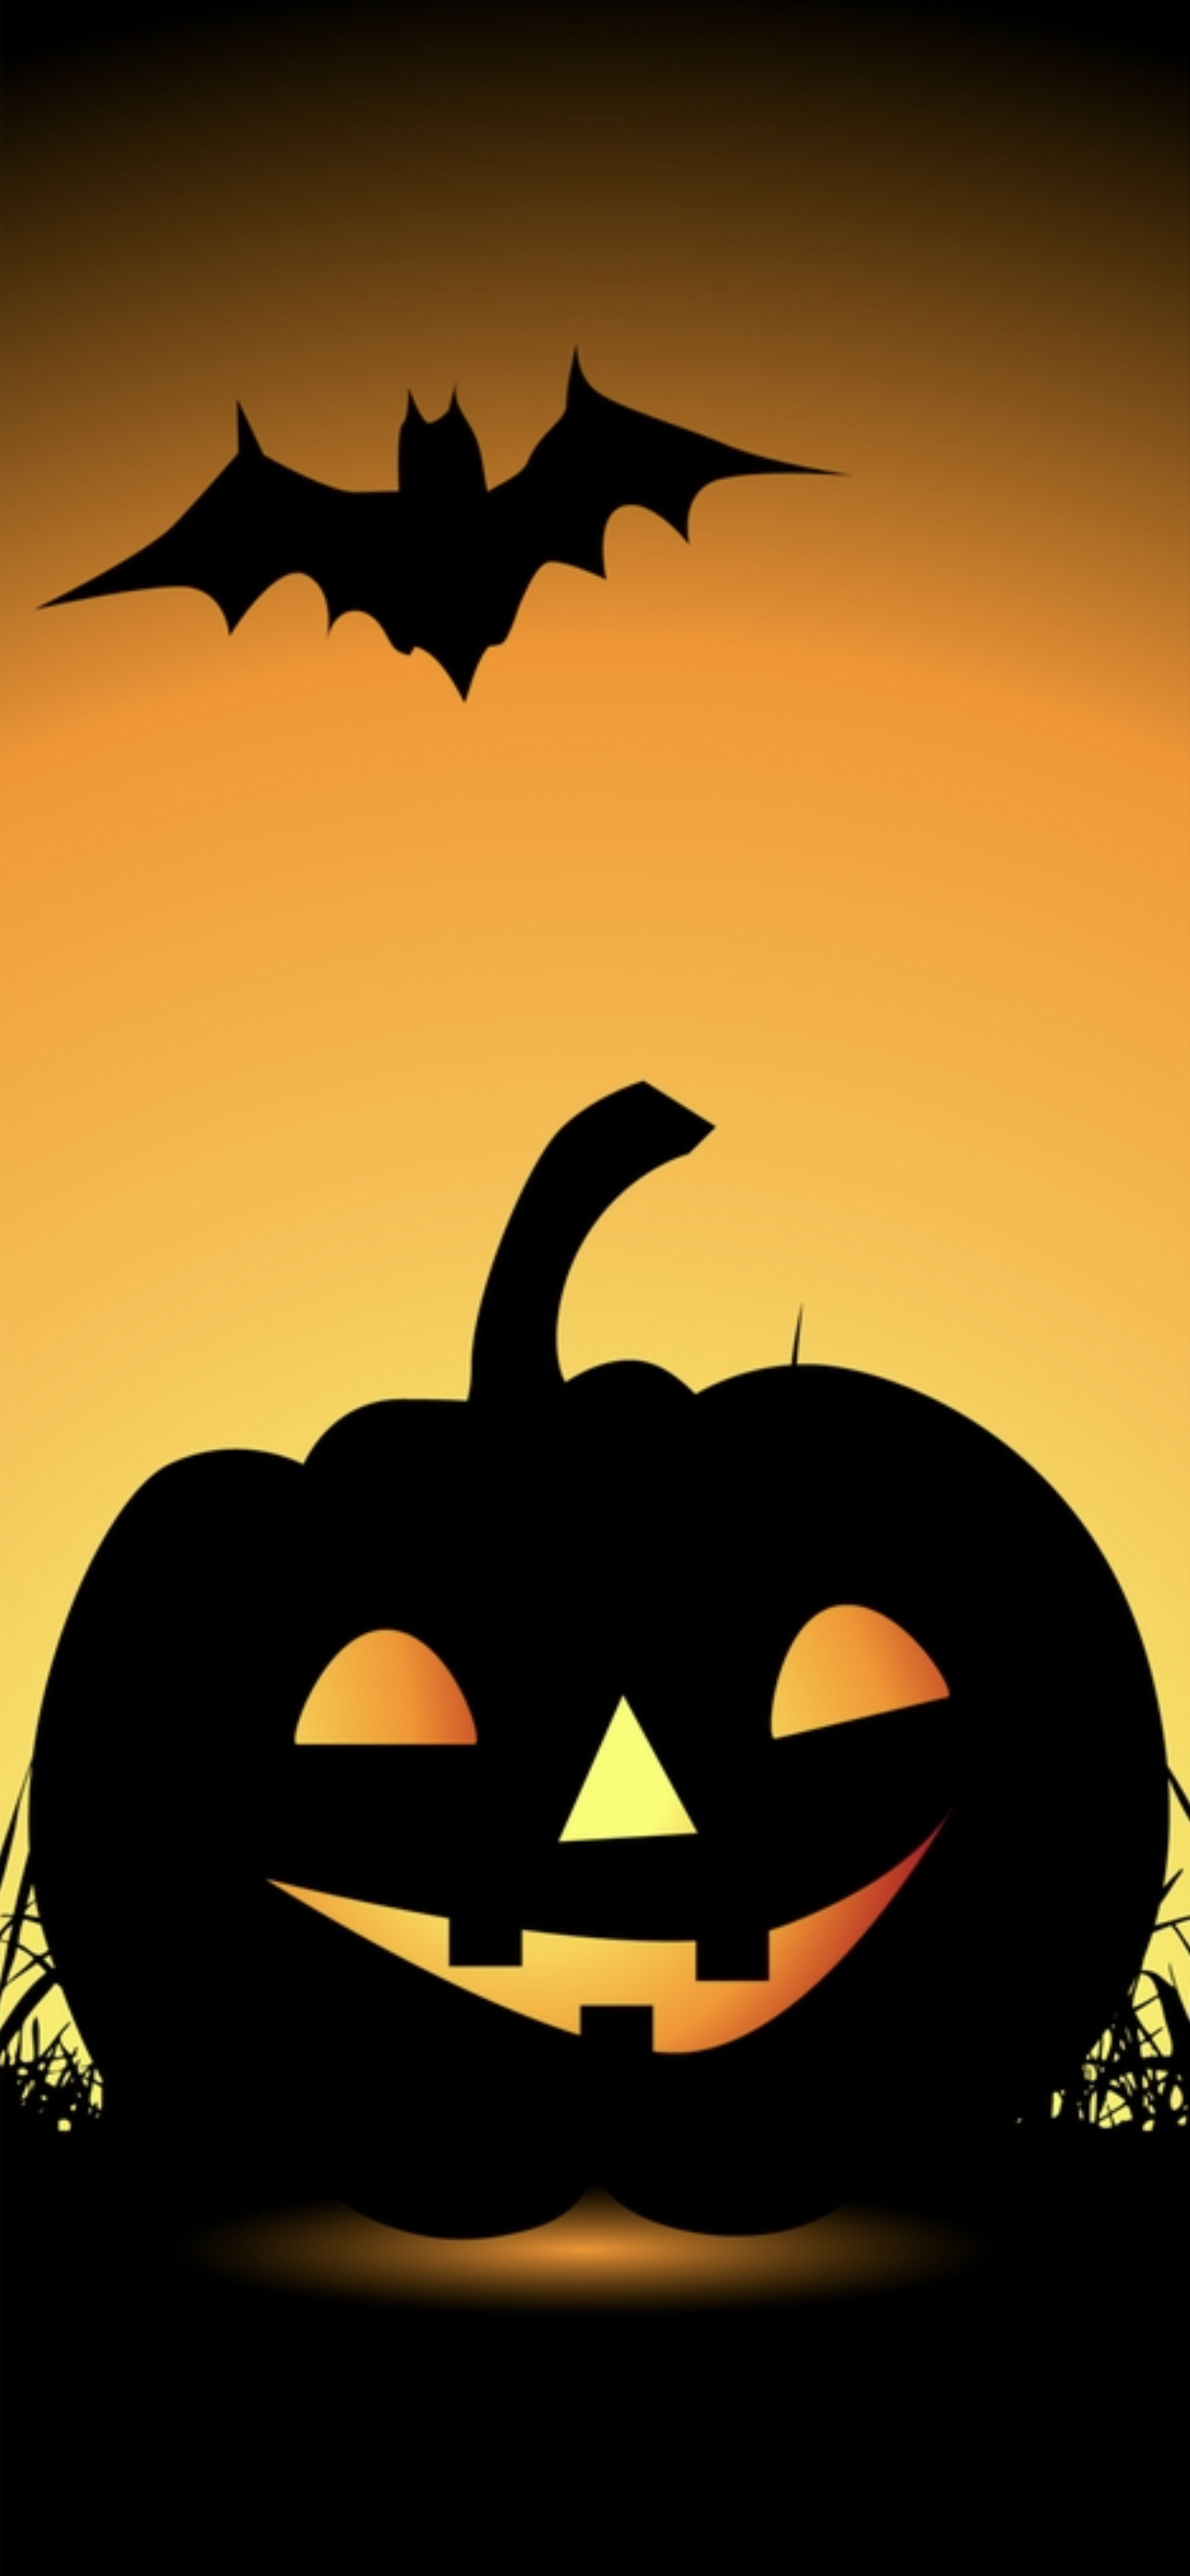 Fondos de Pantalla Helloween, Portada de Facebook de Fiesta de Halloween,  Disfraz de Halloween, Jack O'lantern, Trick-or-treat, Imágenes y Fotos  Gratis